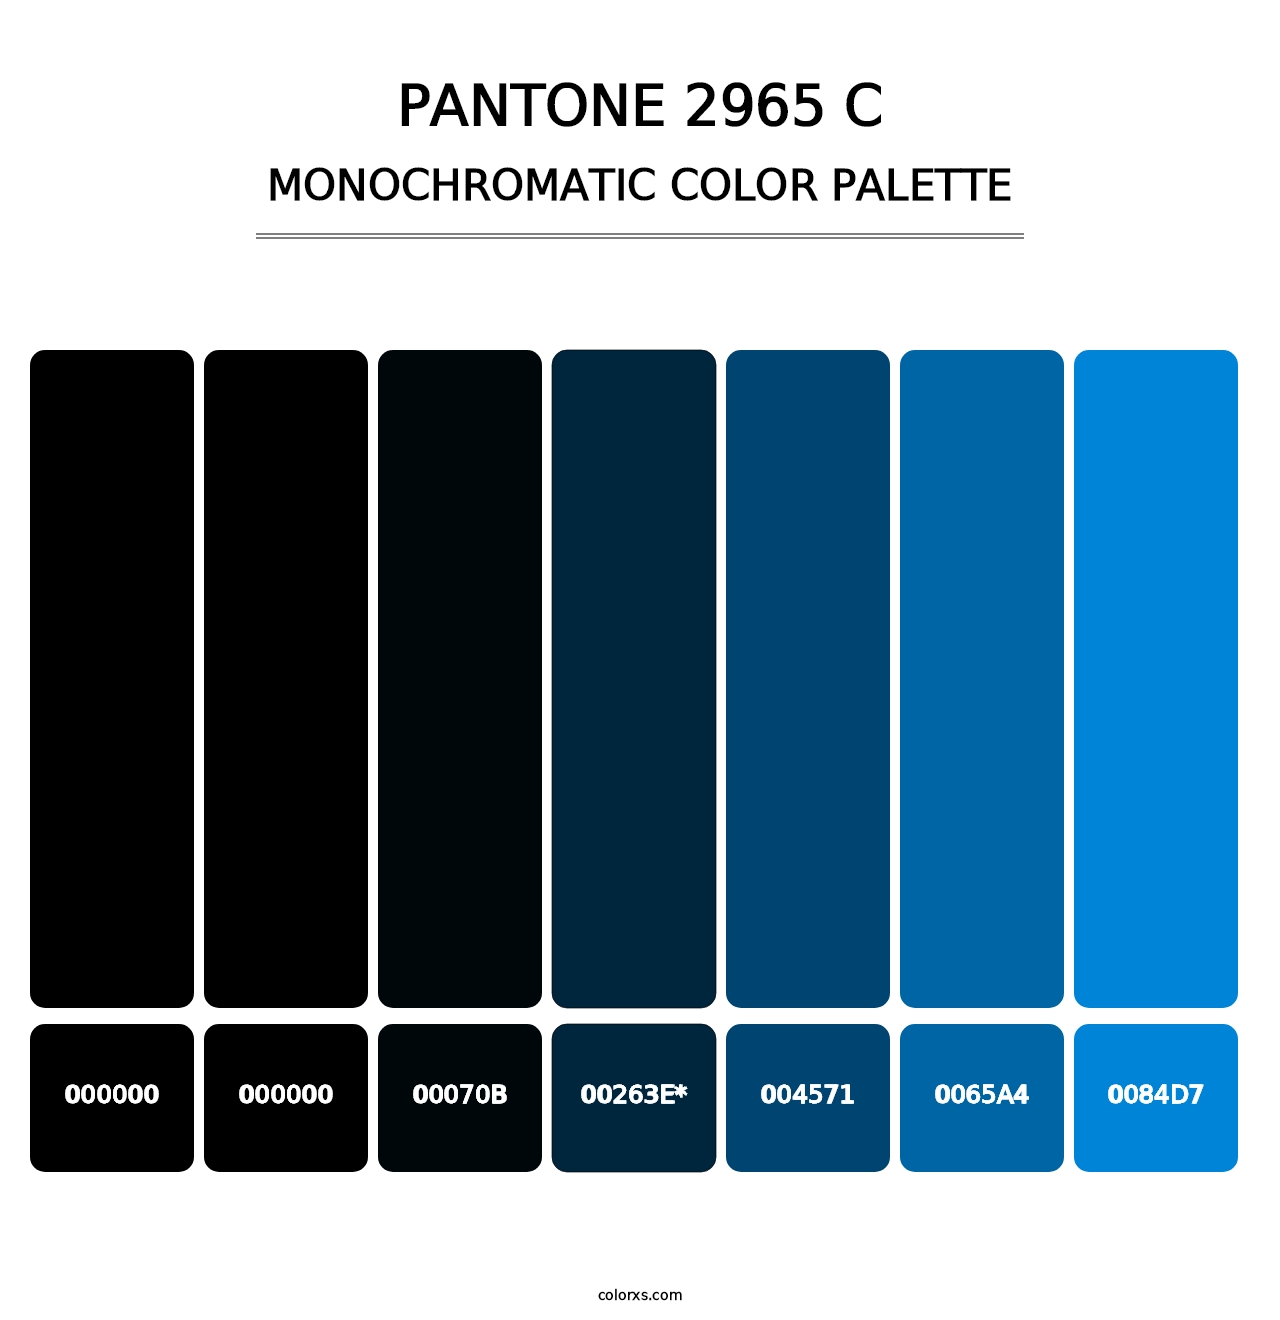 PANTONE 2965 C - Monochromatic Color Palette